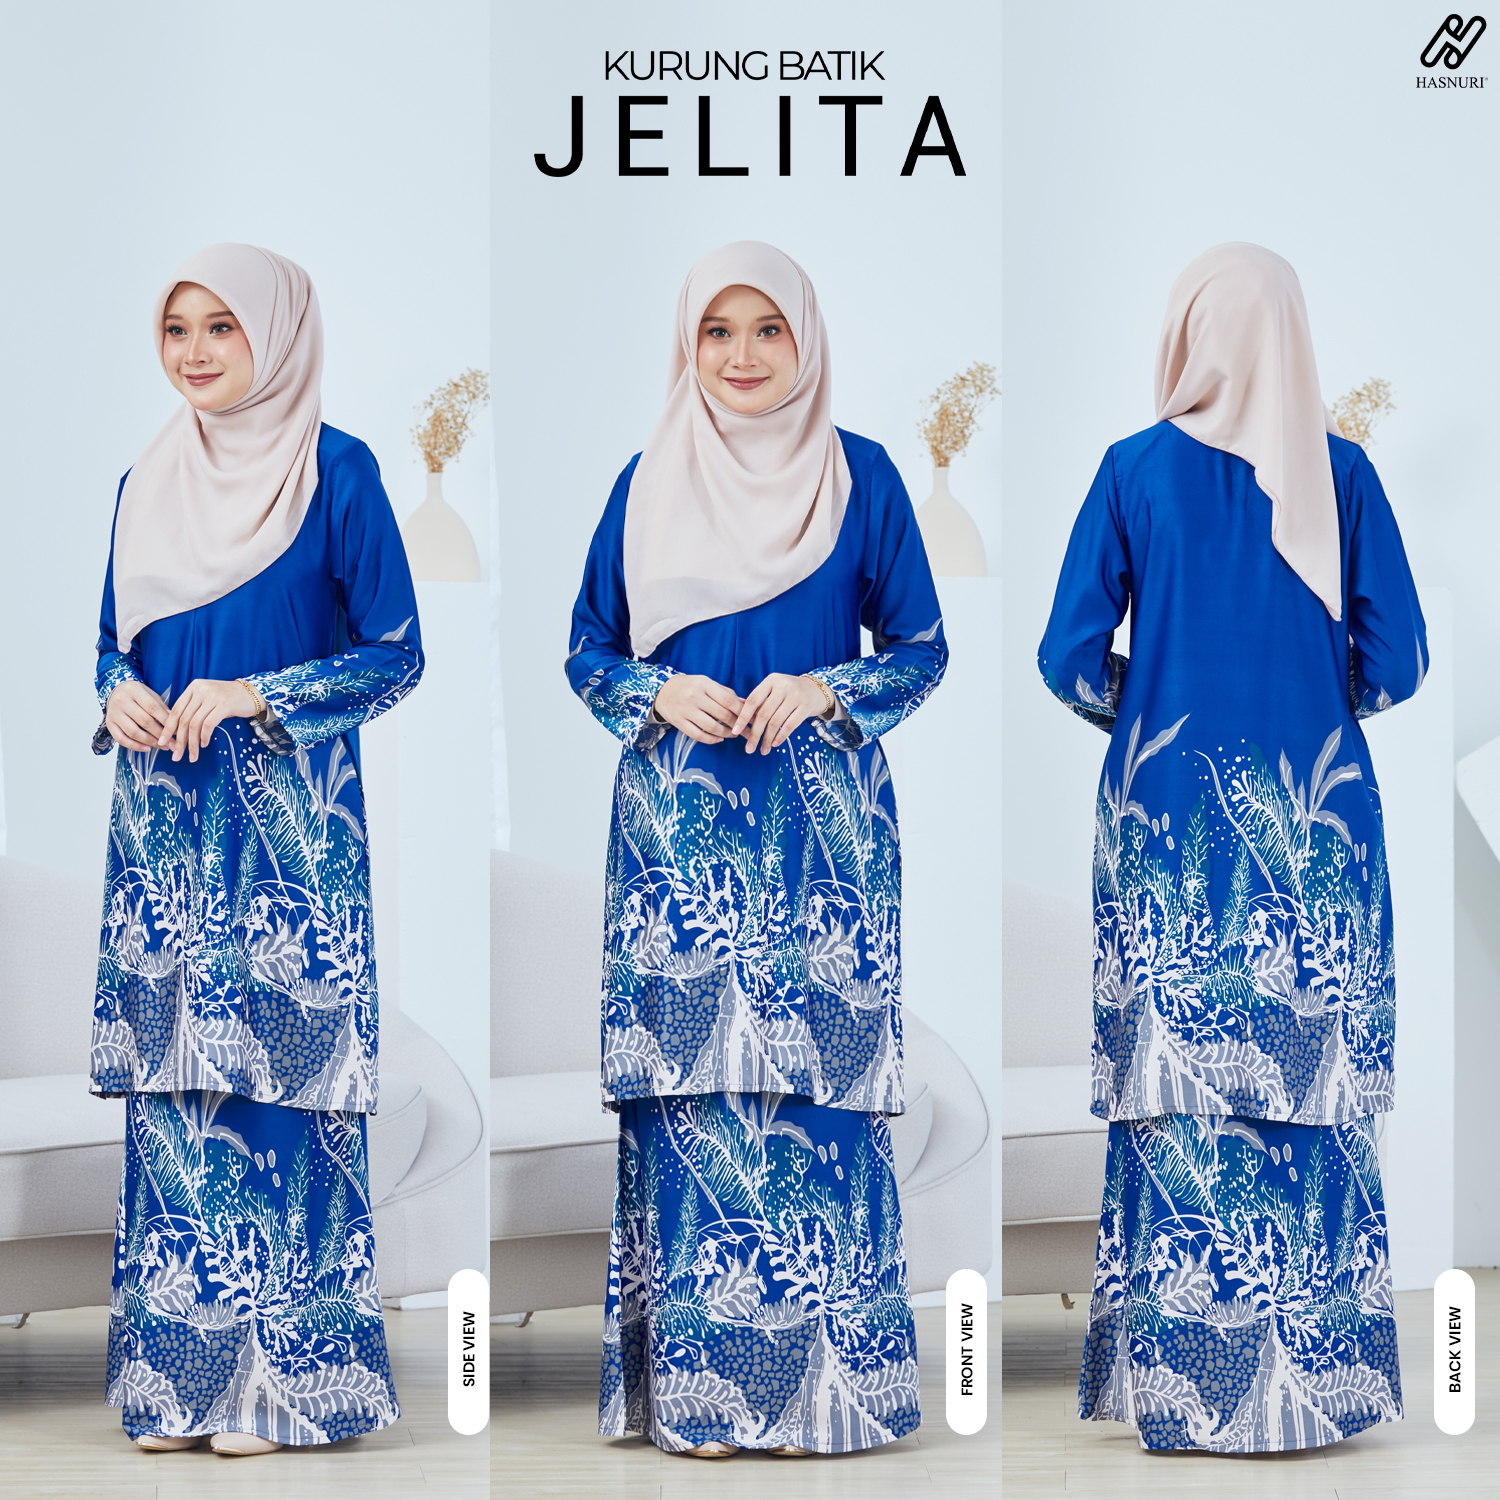 Kurung Batik Jelita - Royal Blue